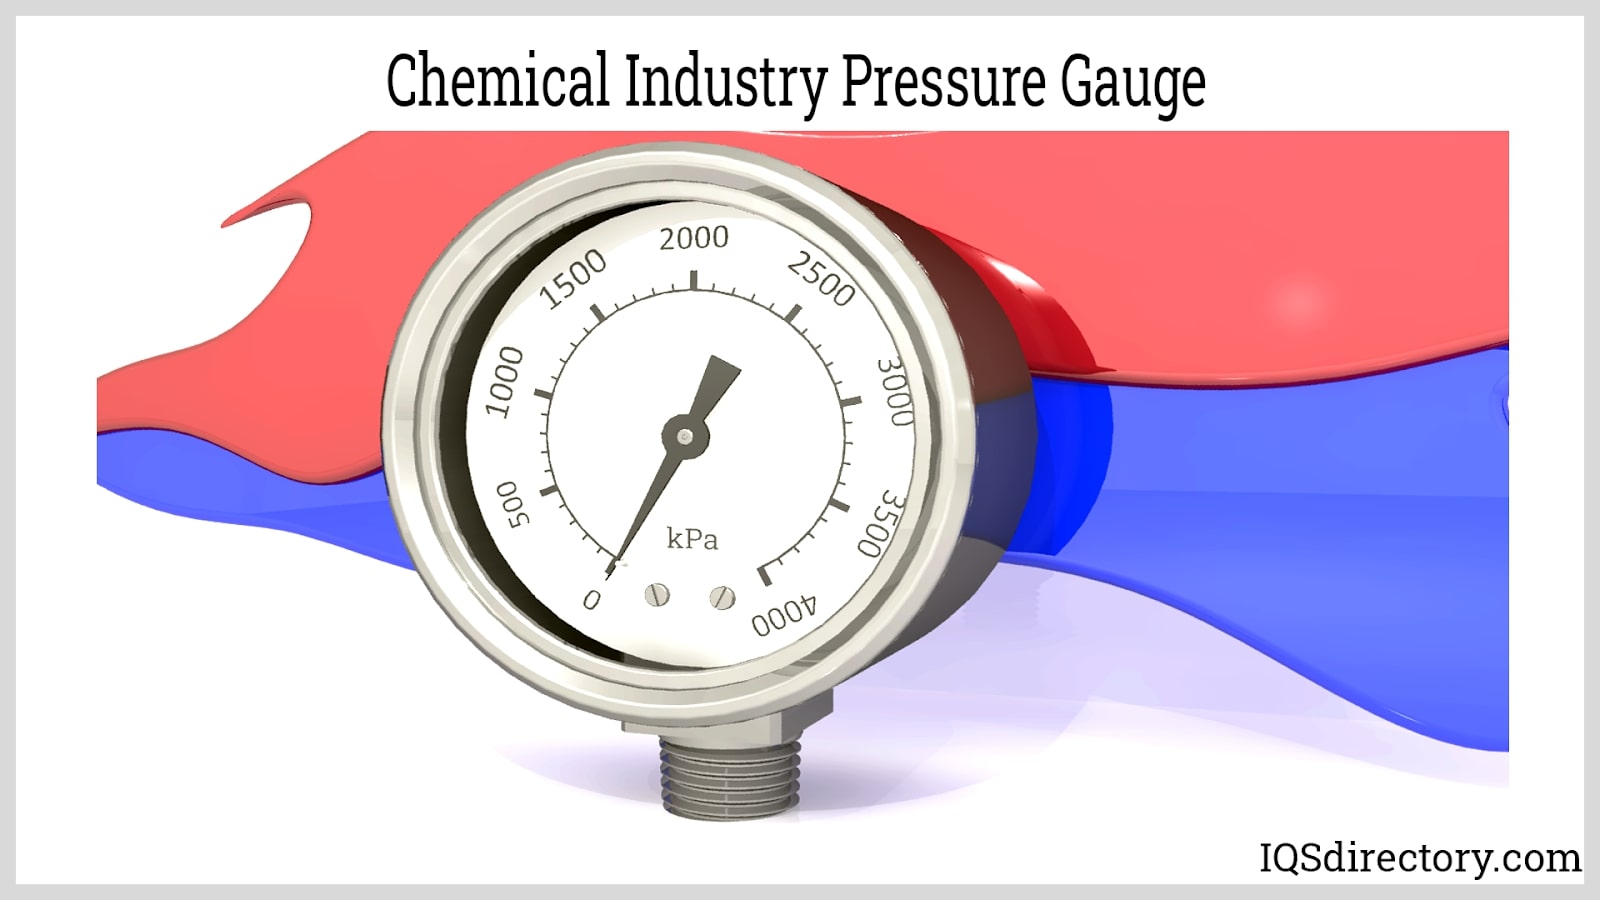 https://www.iqsdirectory.com/articles/pressure-gauge/chemical-ondustry-pressure-gauge.jpg